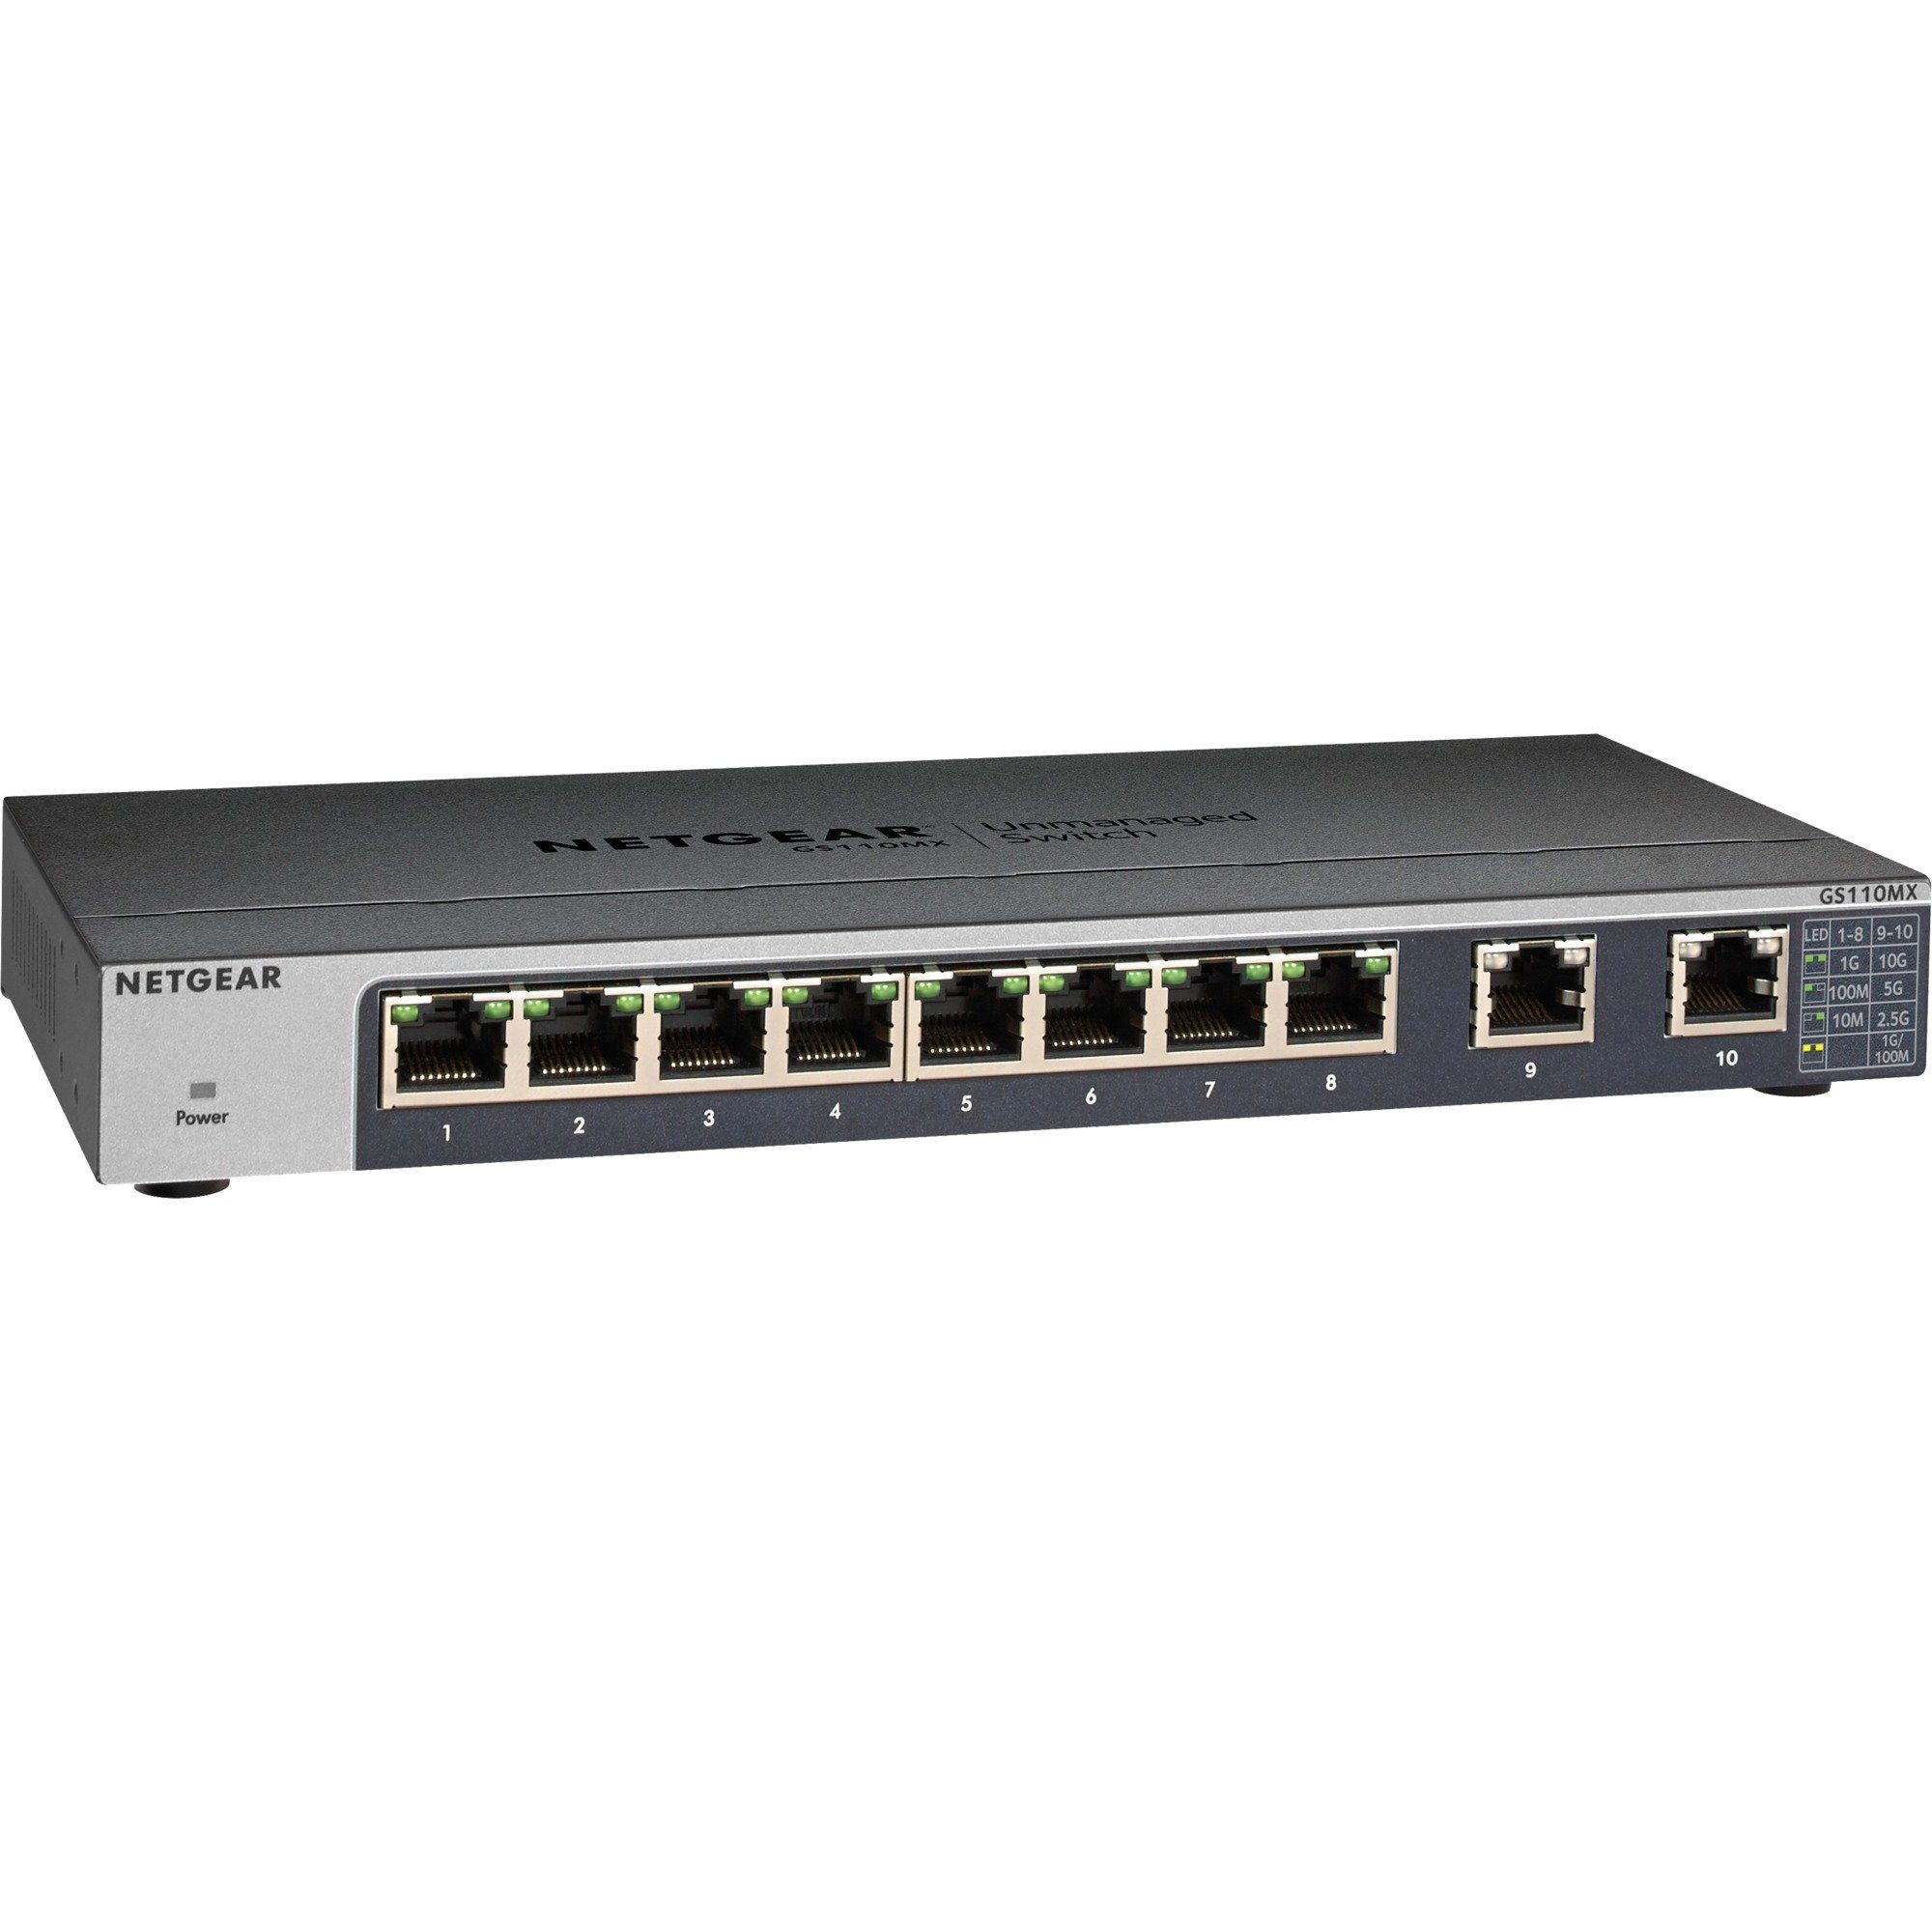 NETGEAR Netgear GS110MX, Uplink RJ-45 x Netzwerk-Switch, Switch 100/1000/2.5G/5G/10G 2